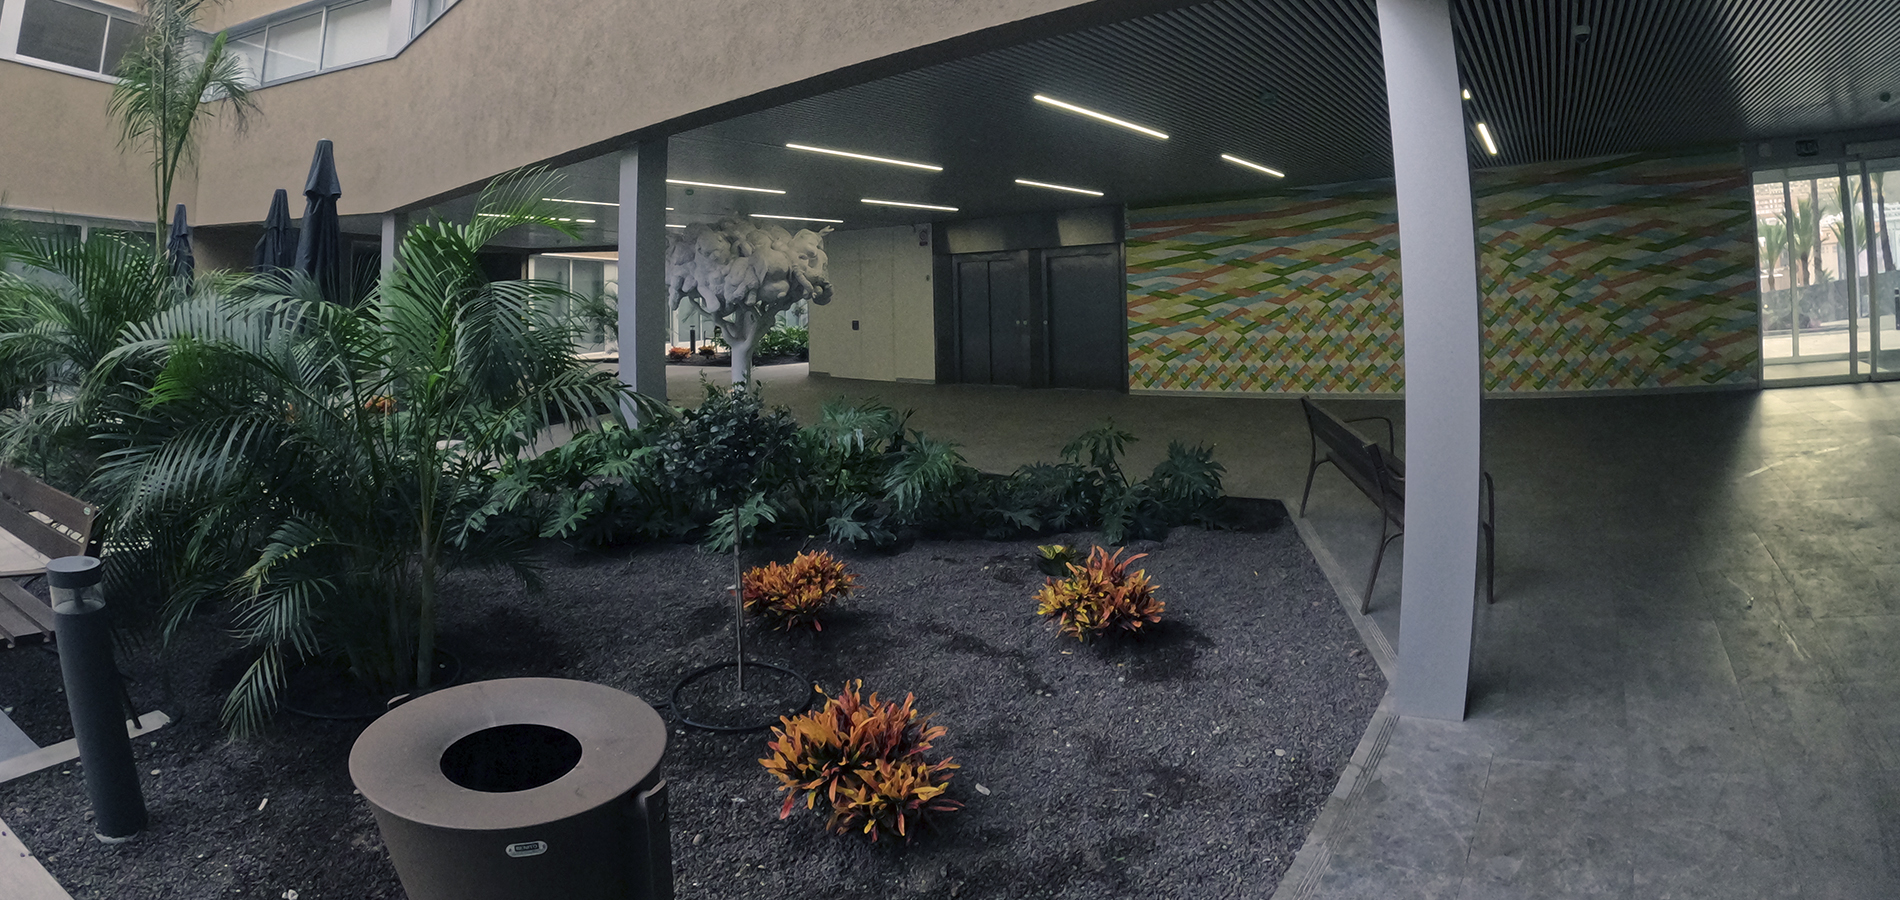 Sando ejecuta el Centro Sociosanitario de La Gomera, un complejo compuesto por un centro para personas mayores y un centro de día.